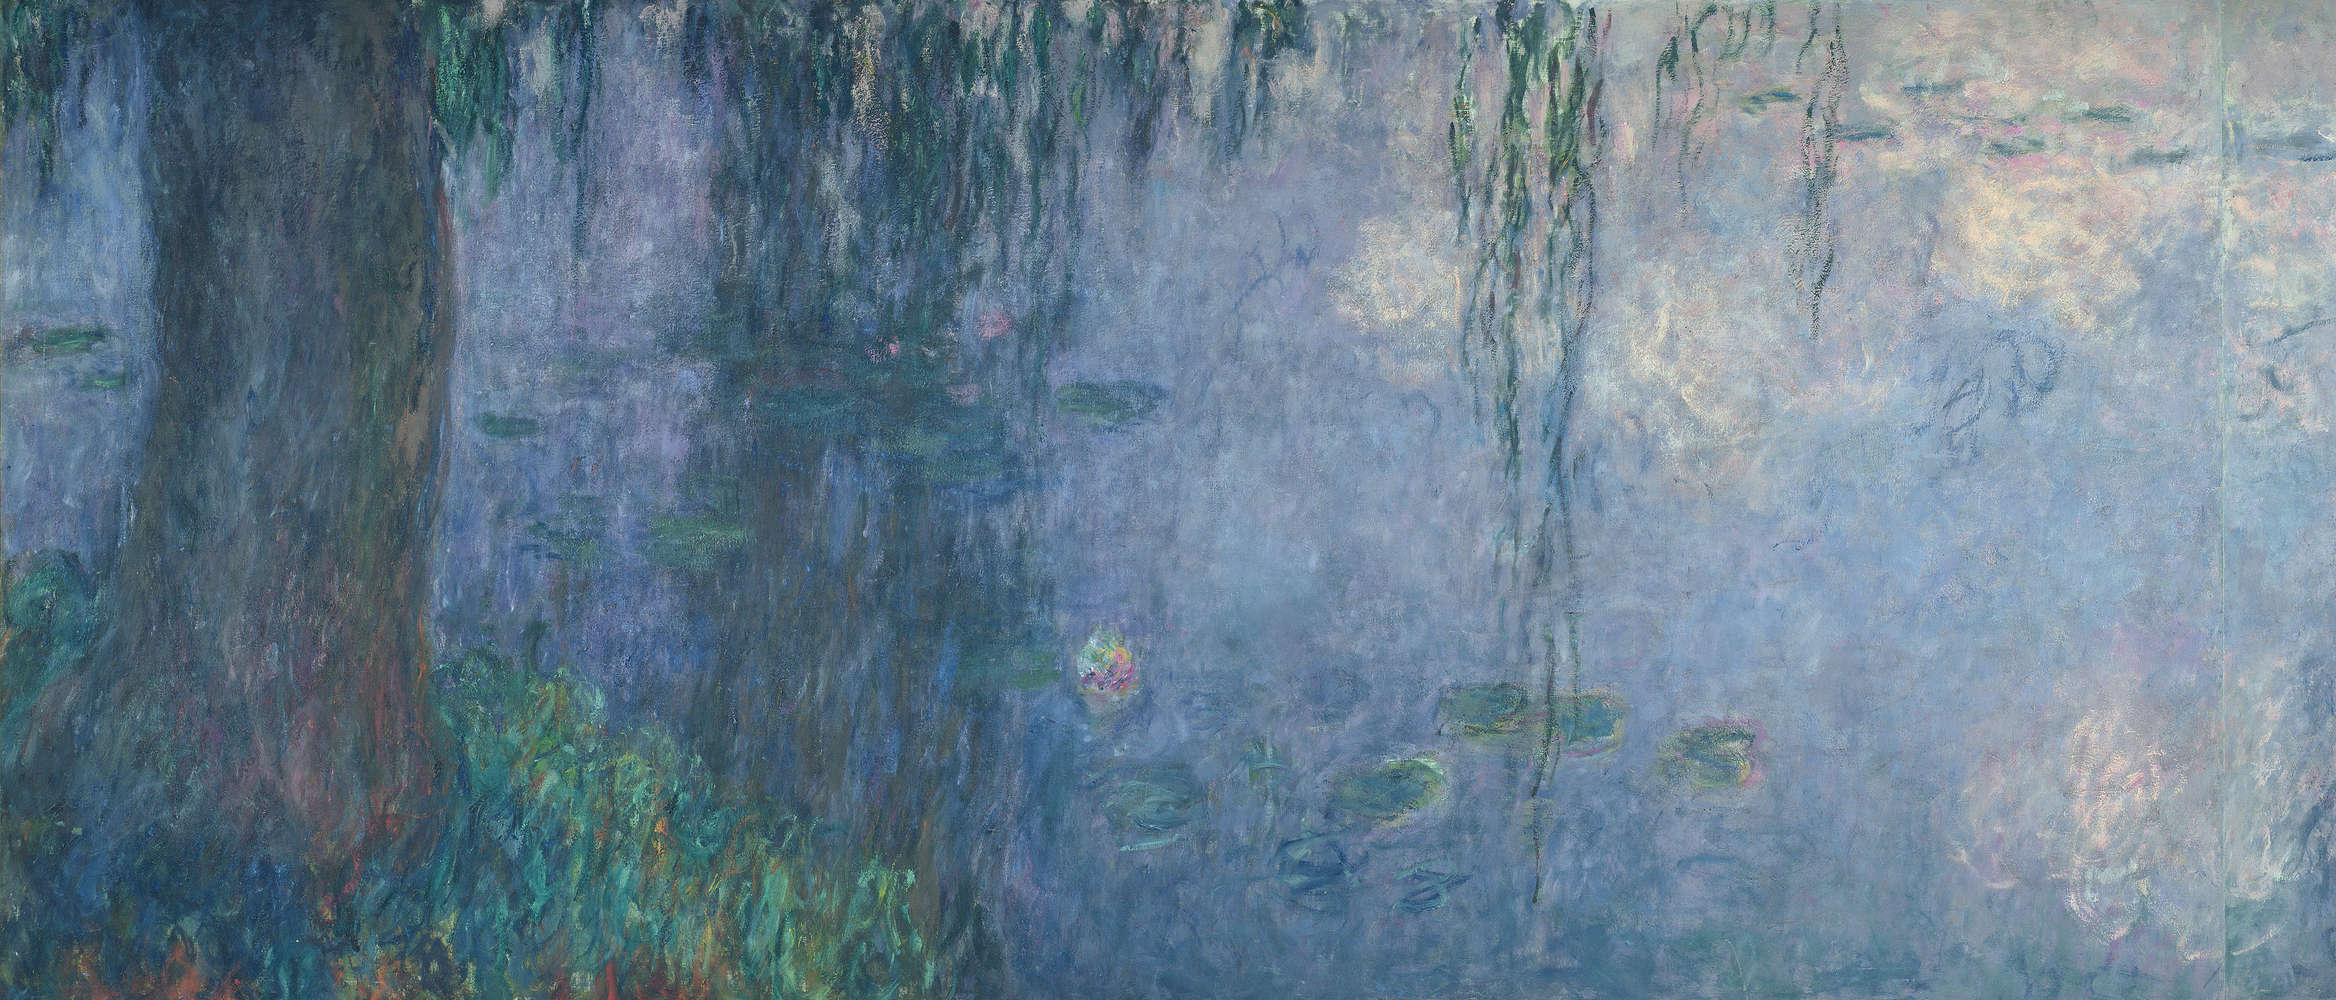             Papier peint "Nymphéas : matin avec saules pleureurs" détail de Claude Monet
        